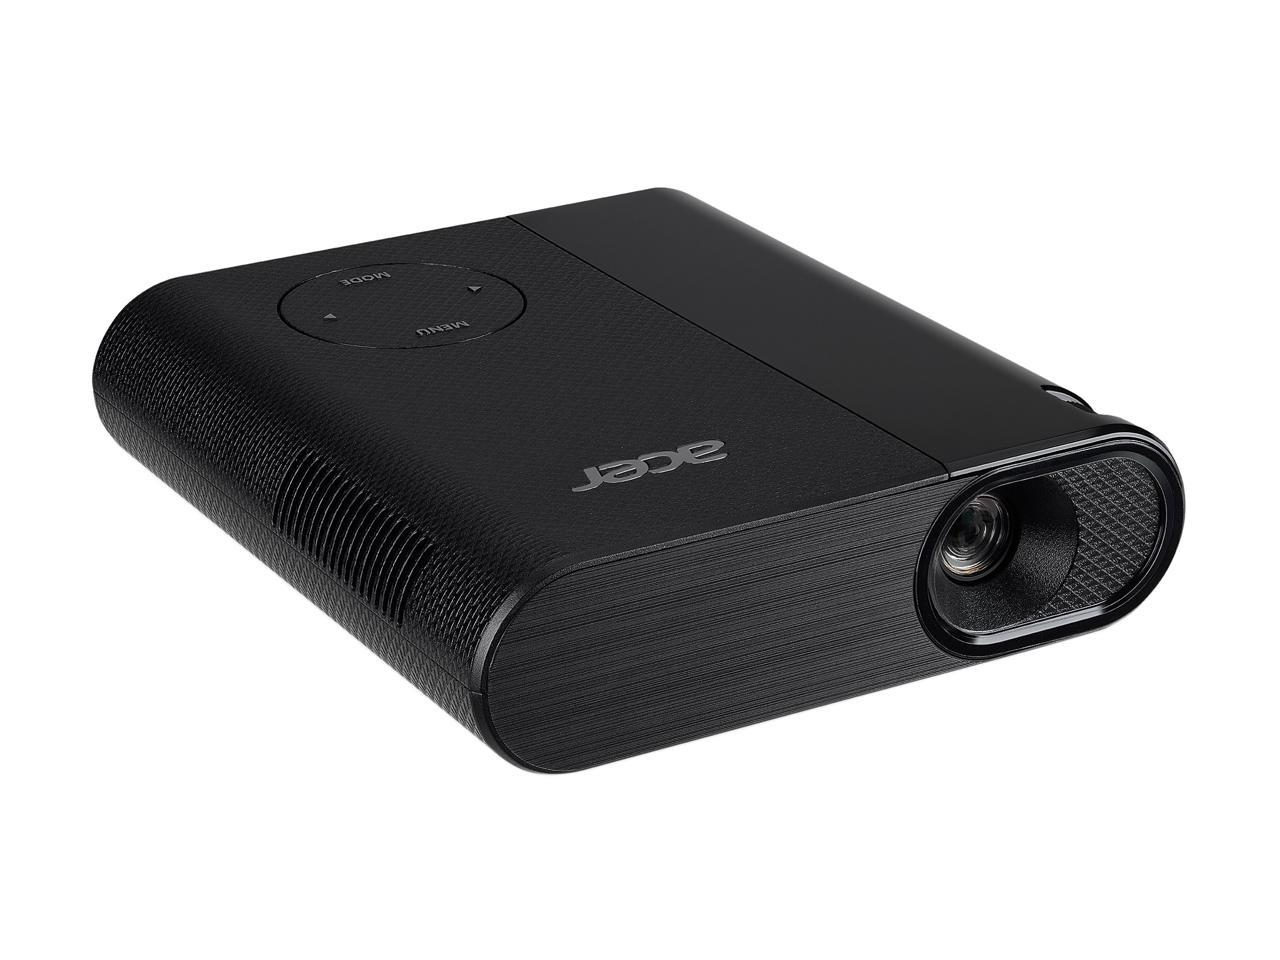 Acer C200 (MR.JQC11.00C) 1600x1200 DLP Projector 200 Lumens